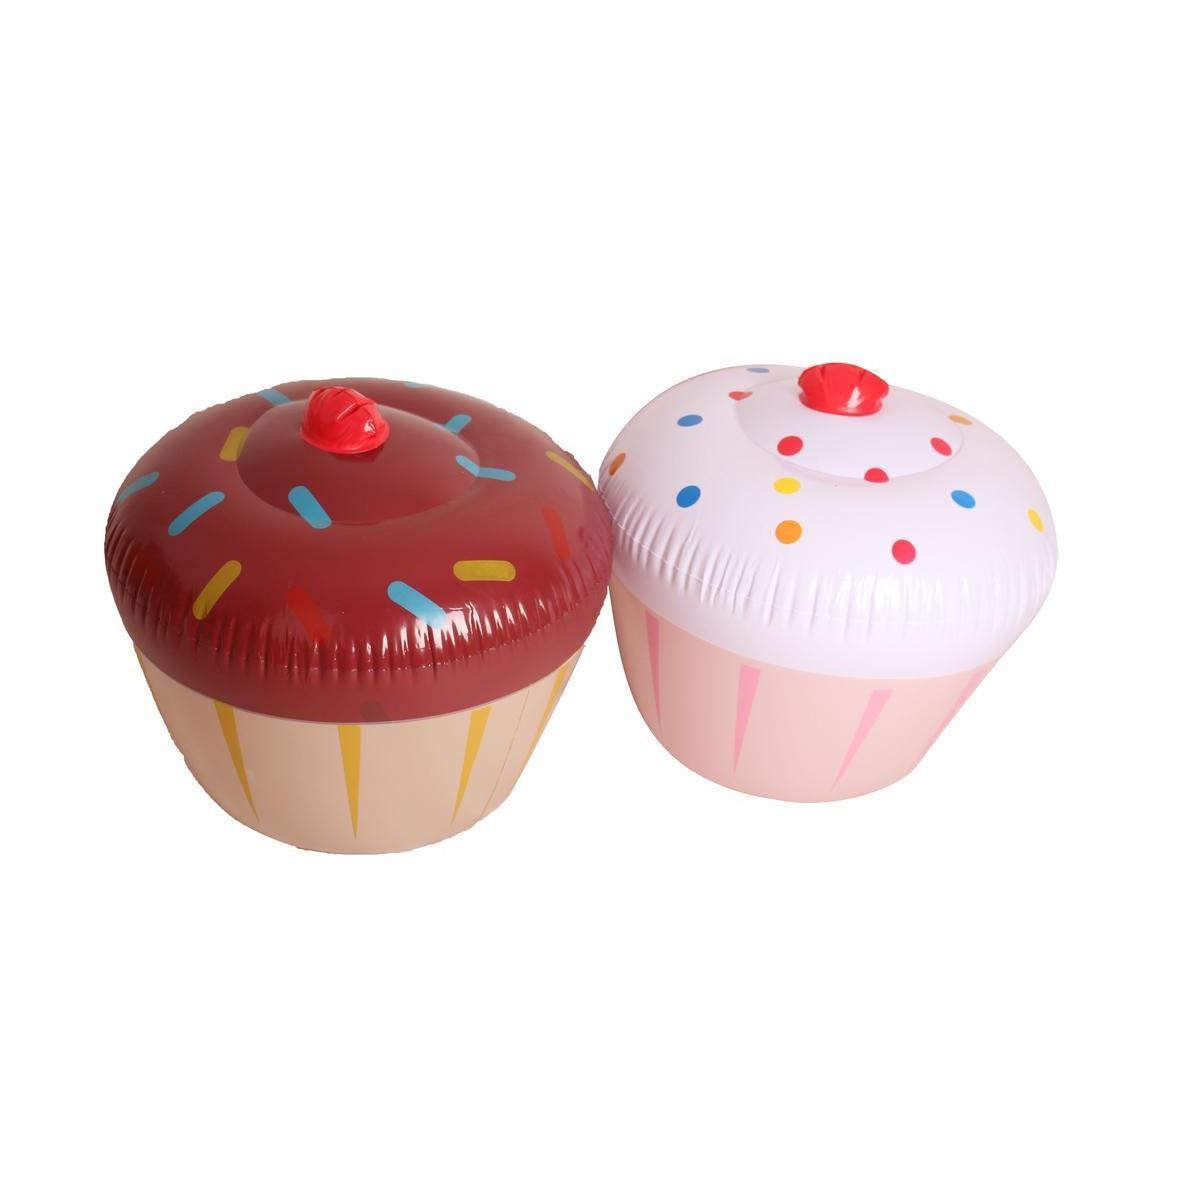 Cupcake gonflable - PVC - Ø 46 x H 45 cm - Multicolore